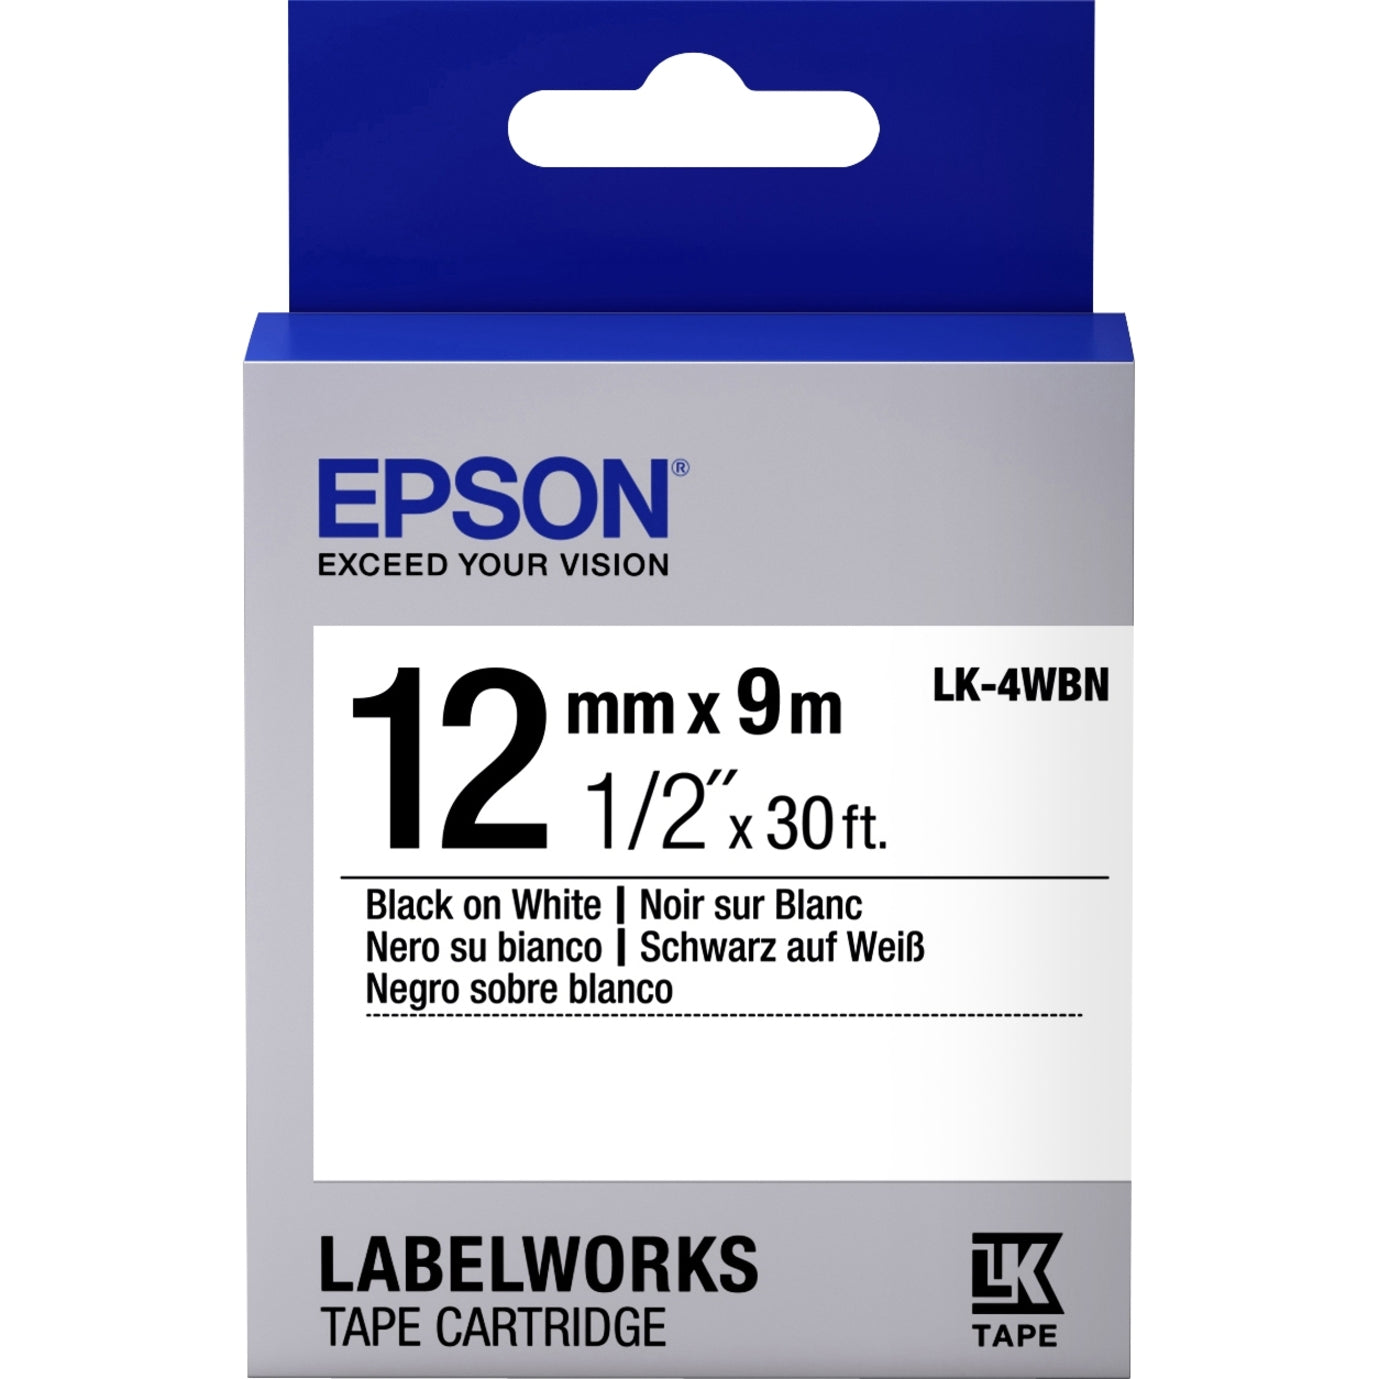 Epson LK-4WBN LabelWorks Standard Tape Cartridge ~1/2" Black on White, Easy Peel